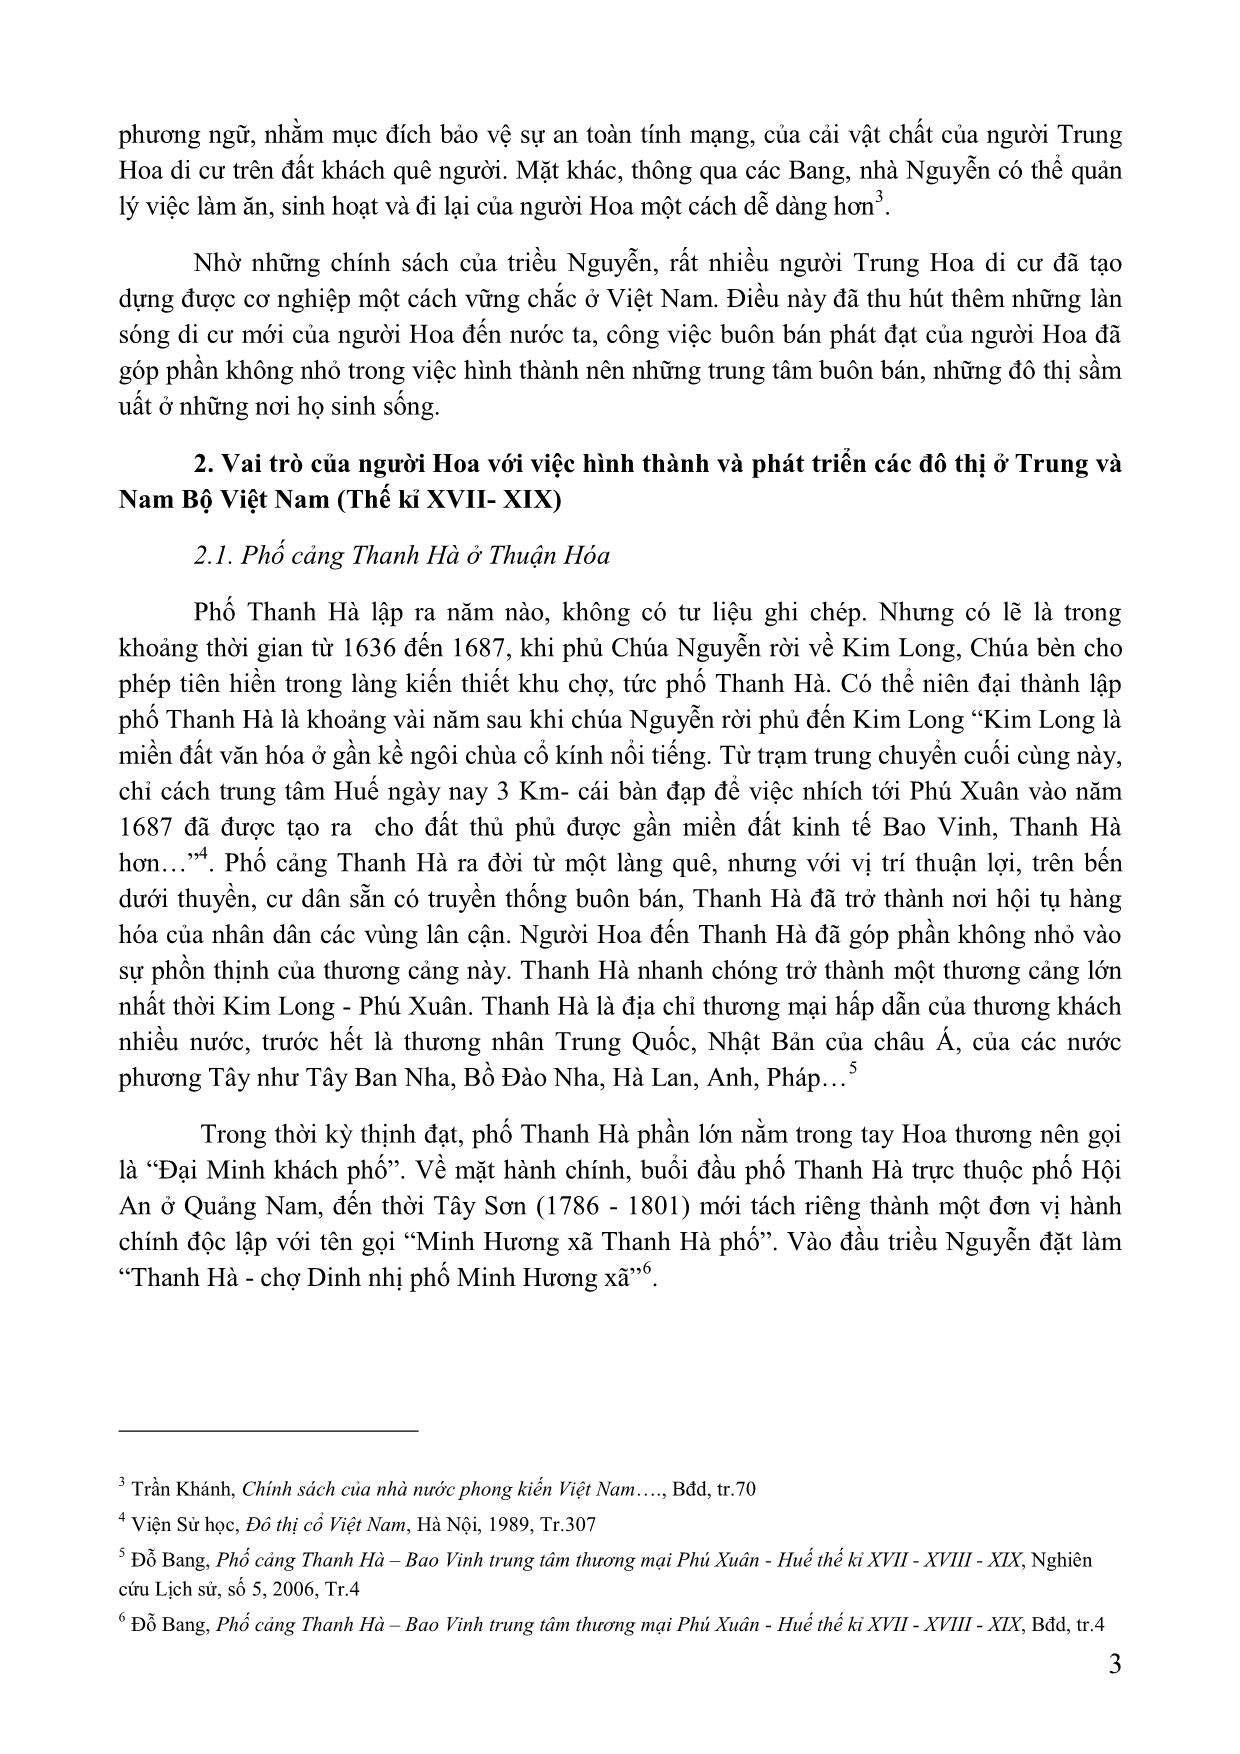 Vai trò của người hoa trong việc hình thành và phát triển các đô thị ở trung và Nam Bộ Việt Nam (thế kỉ XVII-XIX) trang 3